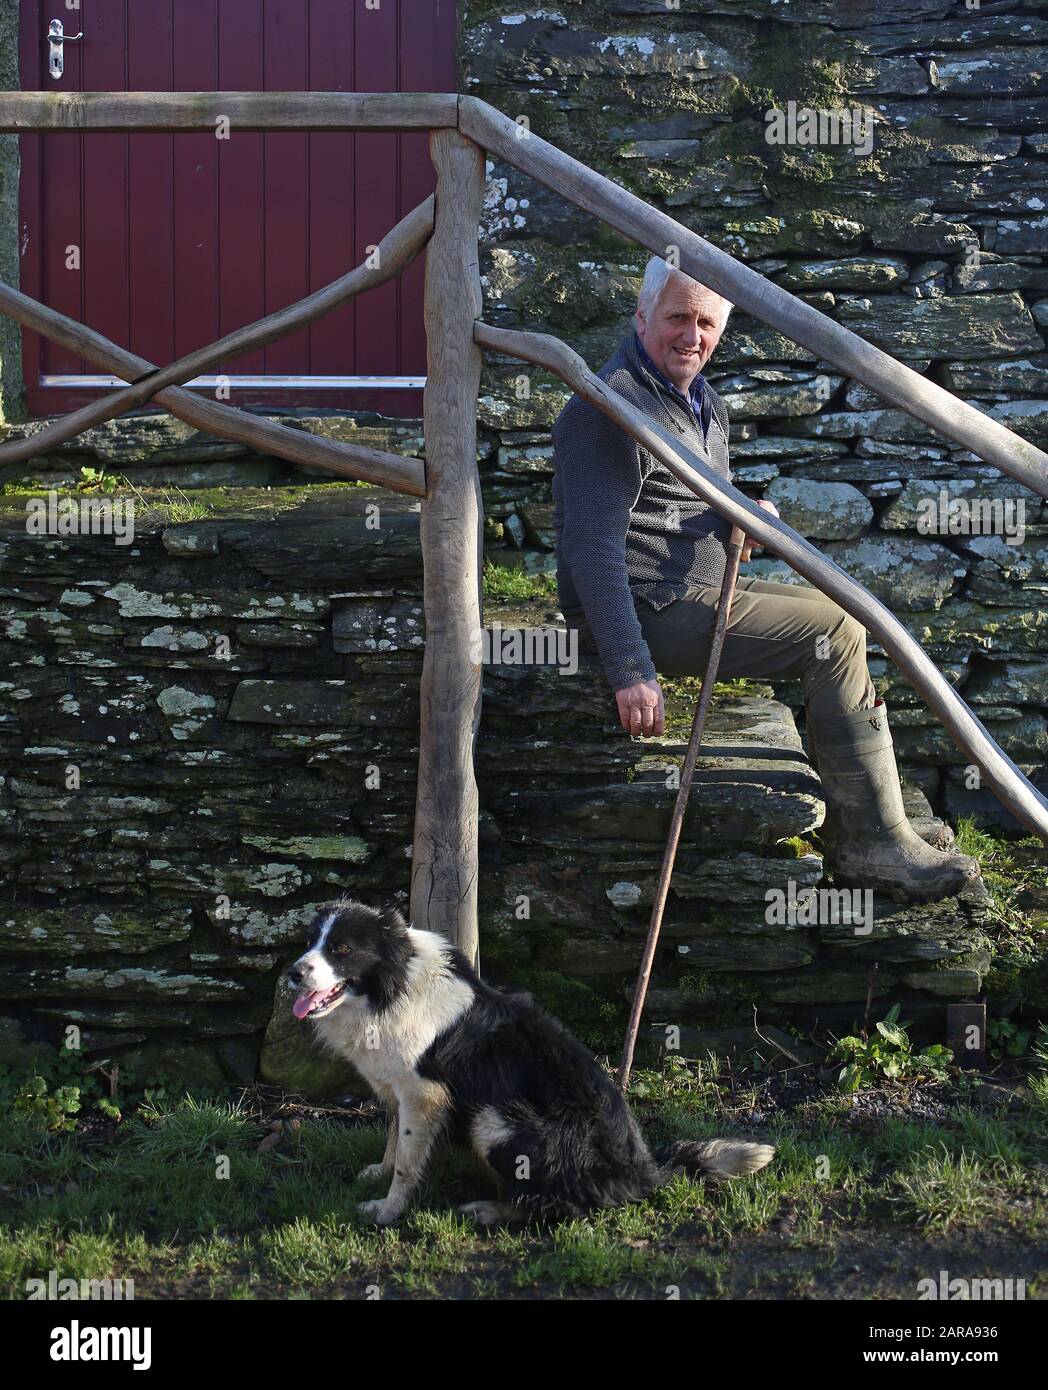 23 gennaio 2020, Regno Unito, Betws-Y-Coed: Glyn Roberts, presidente dell'Unione dei contadini nazionali gallesi, nella sua fattoria in Galles. I circa 18.000 agricoltori della parte britannica del paese temono gravi perdite dovute alla brexite. Essi dipendono fortemente dagli aiuti dell'Unione europea. Il Galles riceve annualmente dall'Unione europea circa 680 milioni di sterline (circa 800 milioni di euro). (A dpa-KORR.: 'Brexite incontra la casa dei poveri britannici Galles proprio nel cuore' del 26.01.2020) Foto: Susanna Irlanda/dpa Foto Stock